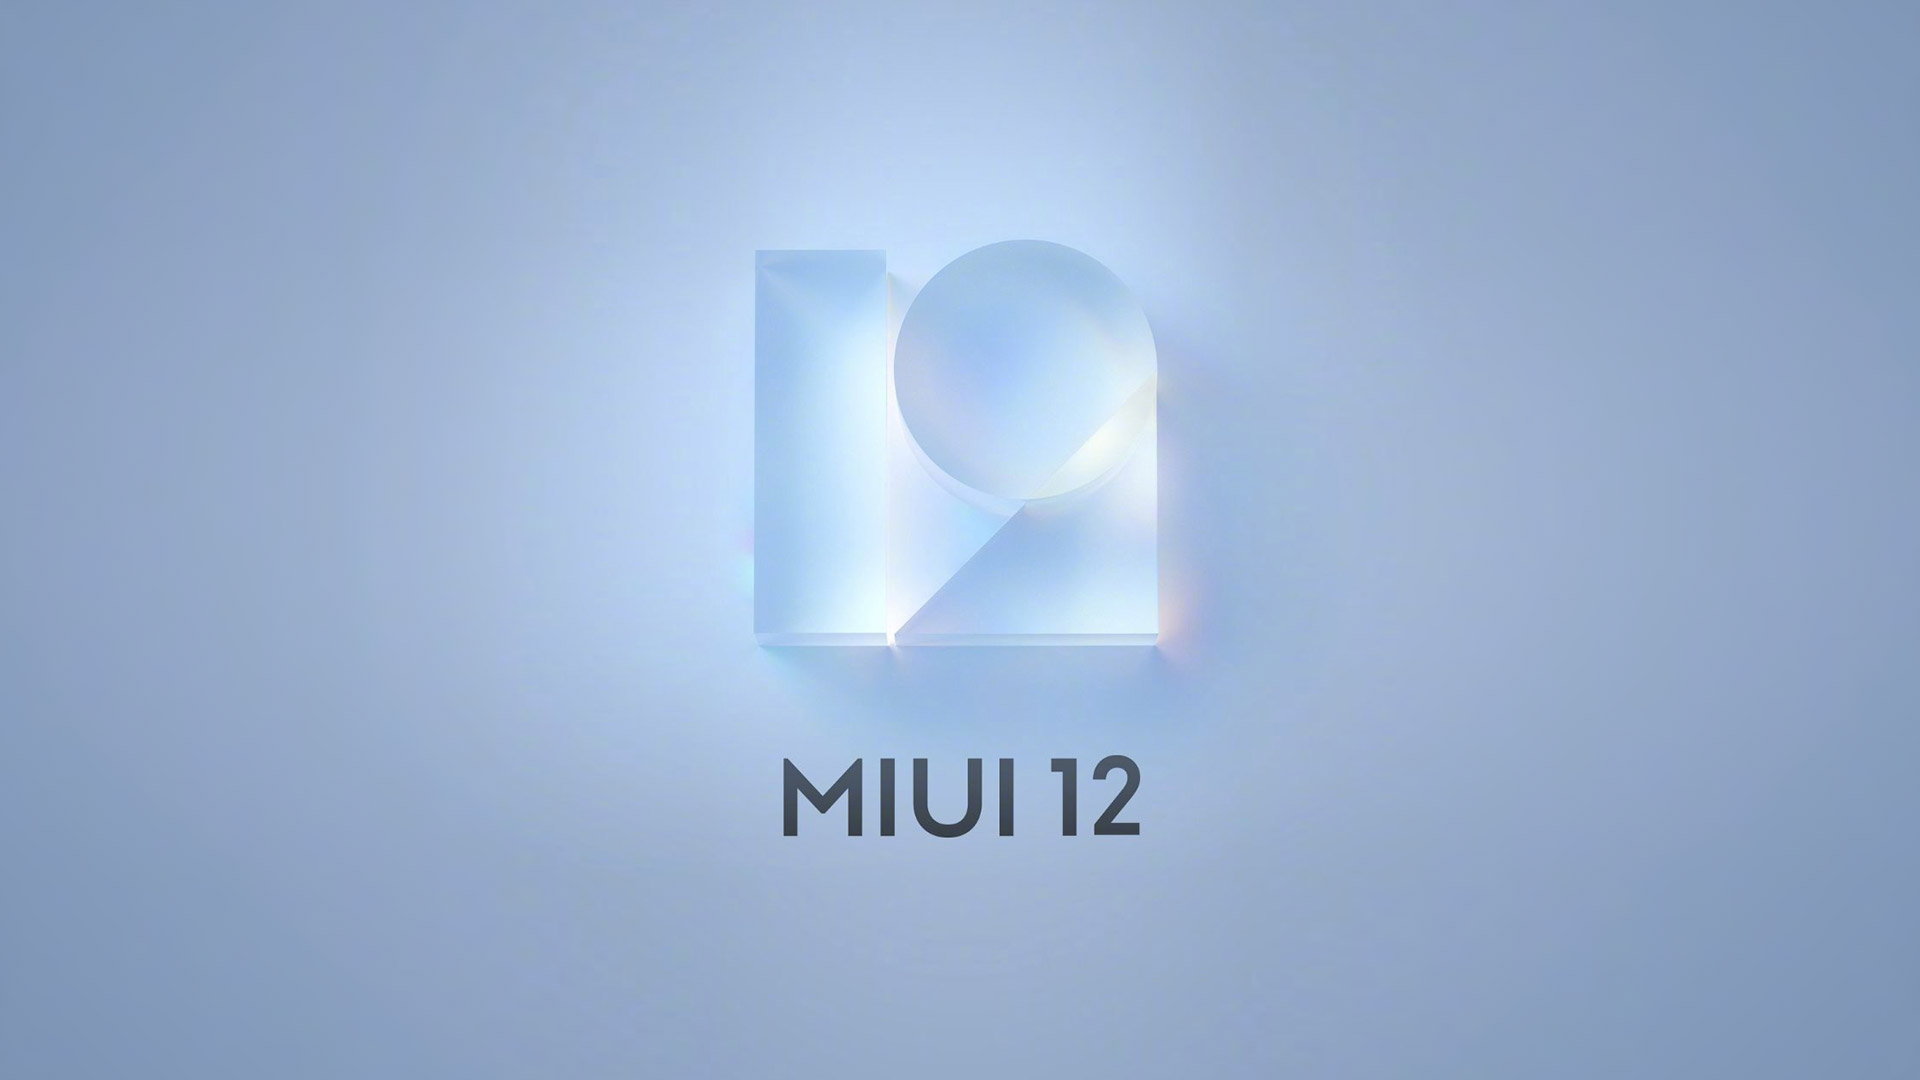 小米手机logo设计-MIUI12新logo设计